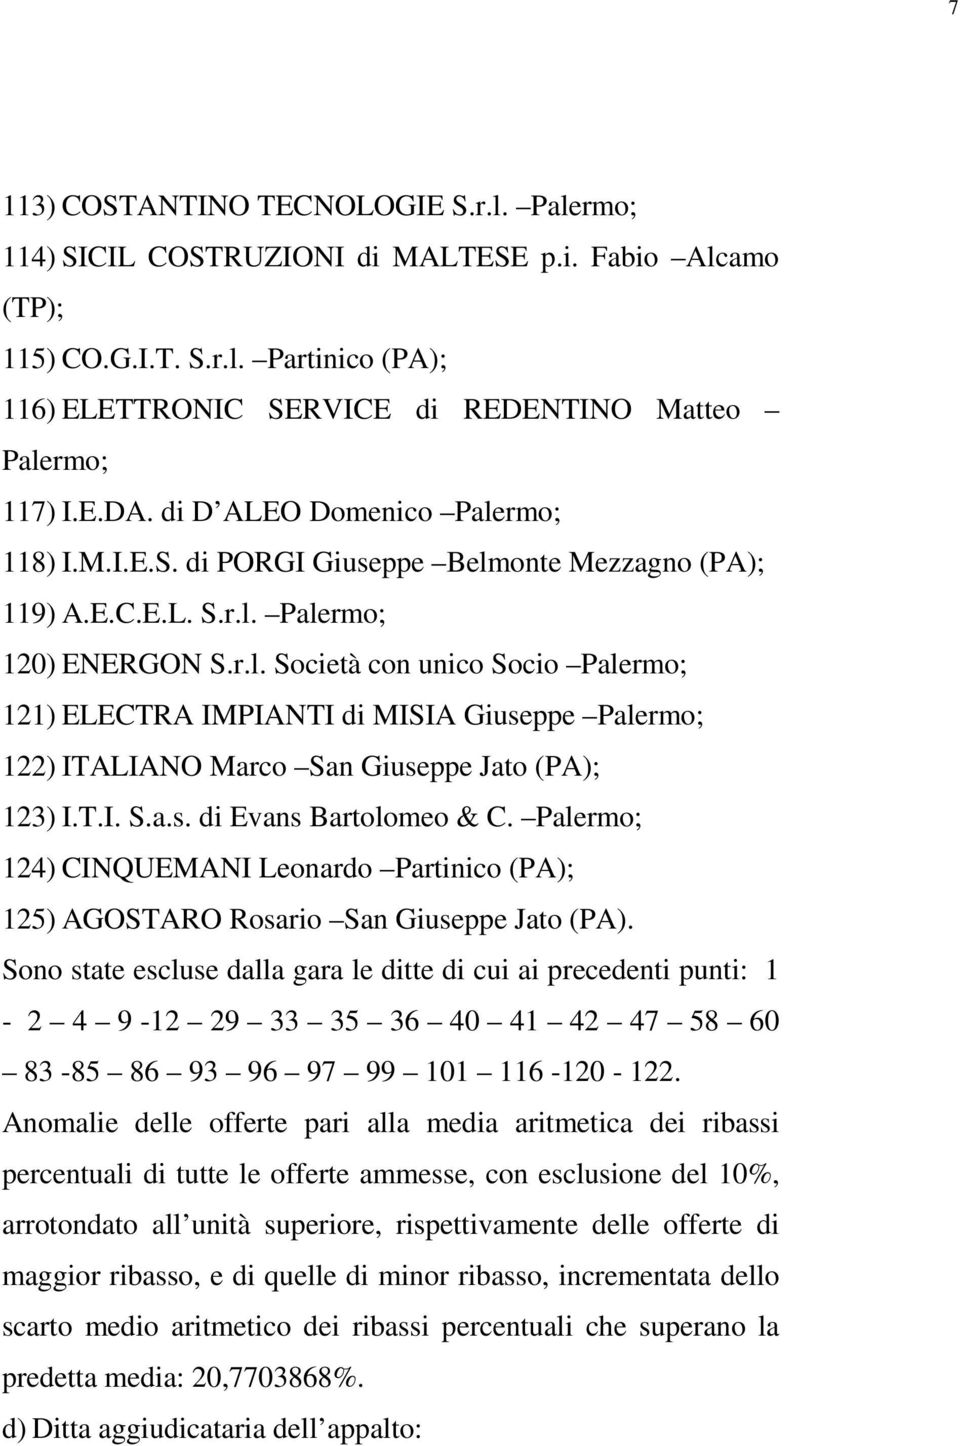 T.I. S.a.s. di Evans Bartolomeo & C. Palermo; 124) CINQUEMANI Leonardo Partinico (PA); 125) AGOSTARO Rosario San Giuseppe Jato (PA).